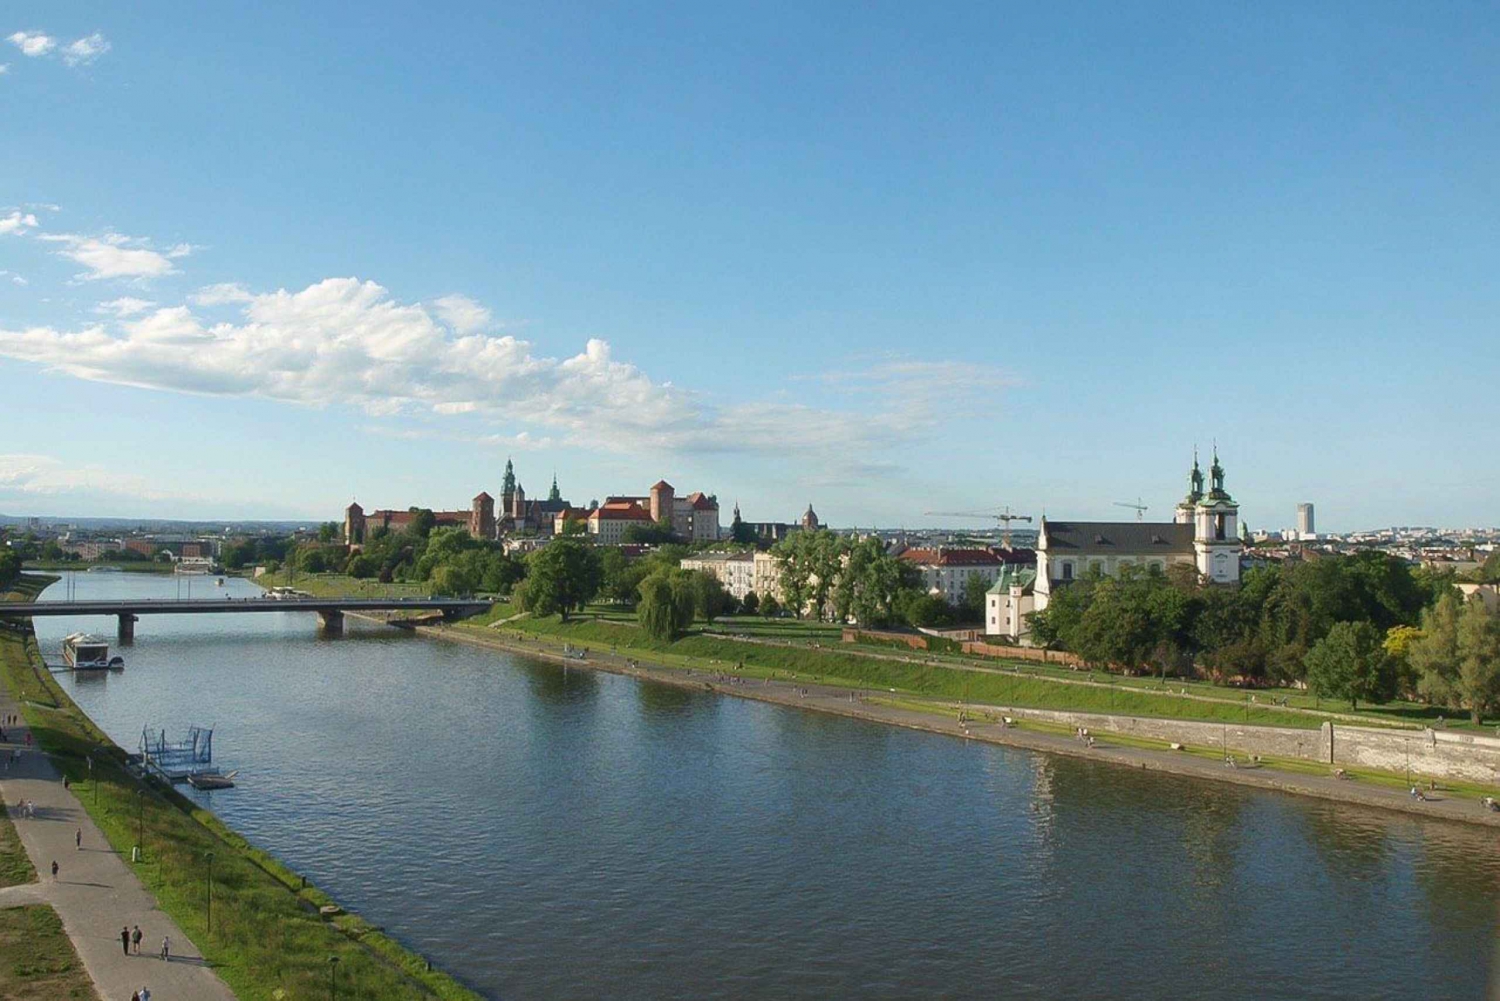 Cracovia: centro storico, Wawel e museo sotterraneo con pranzo